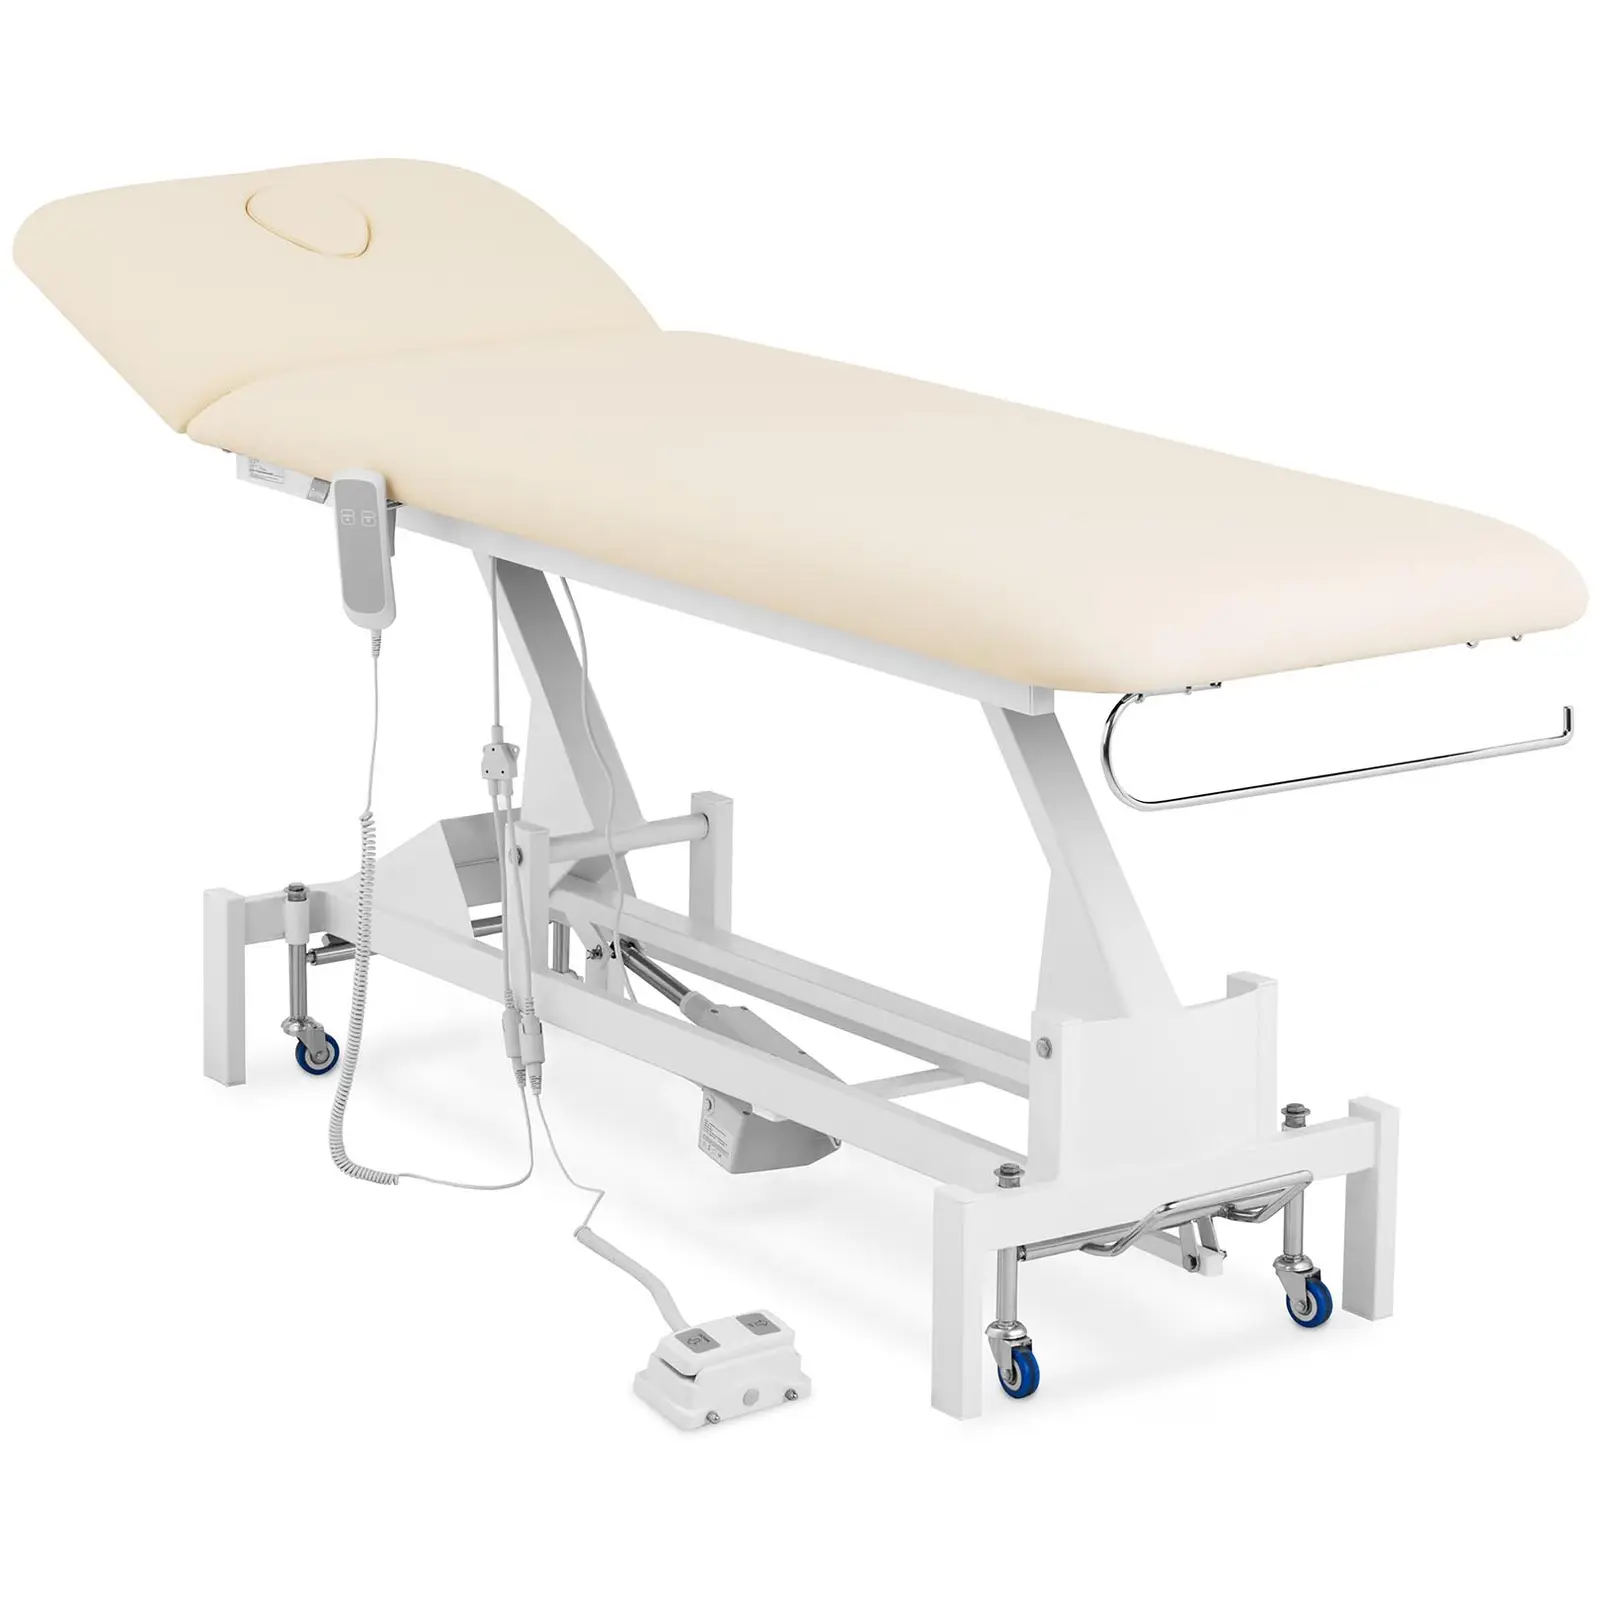 Table de massage électrique - 50 W - 200 kg - Beige